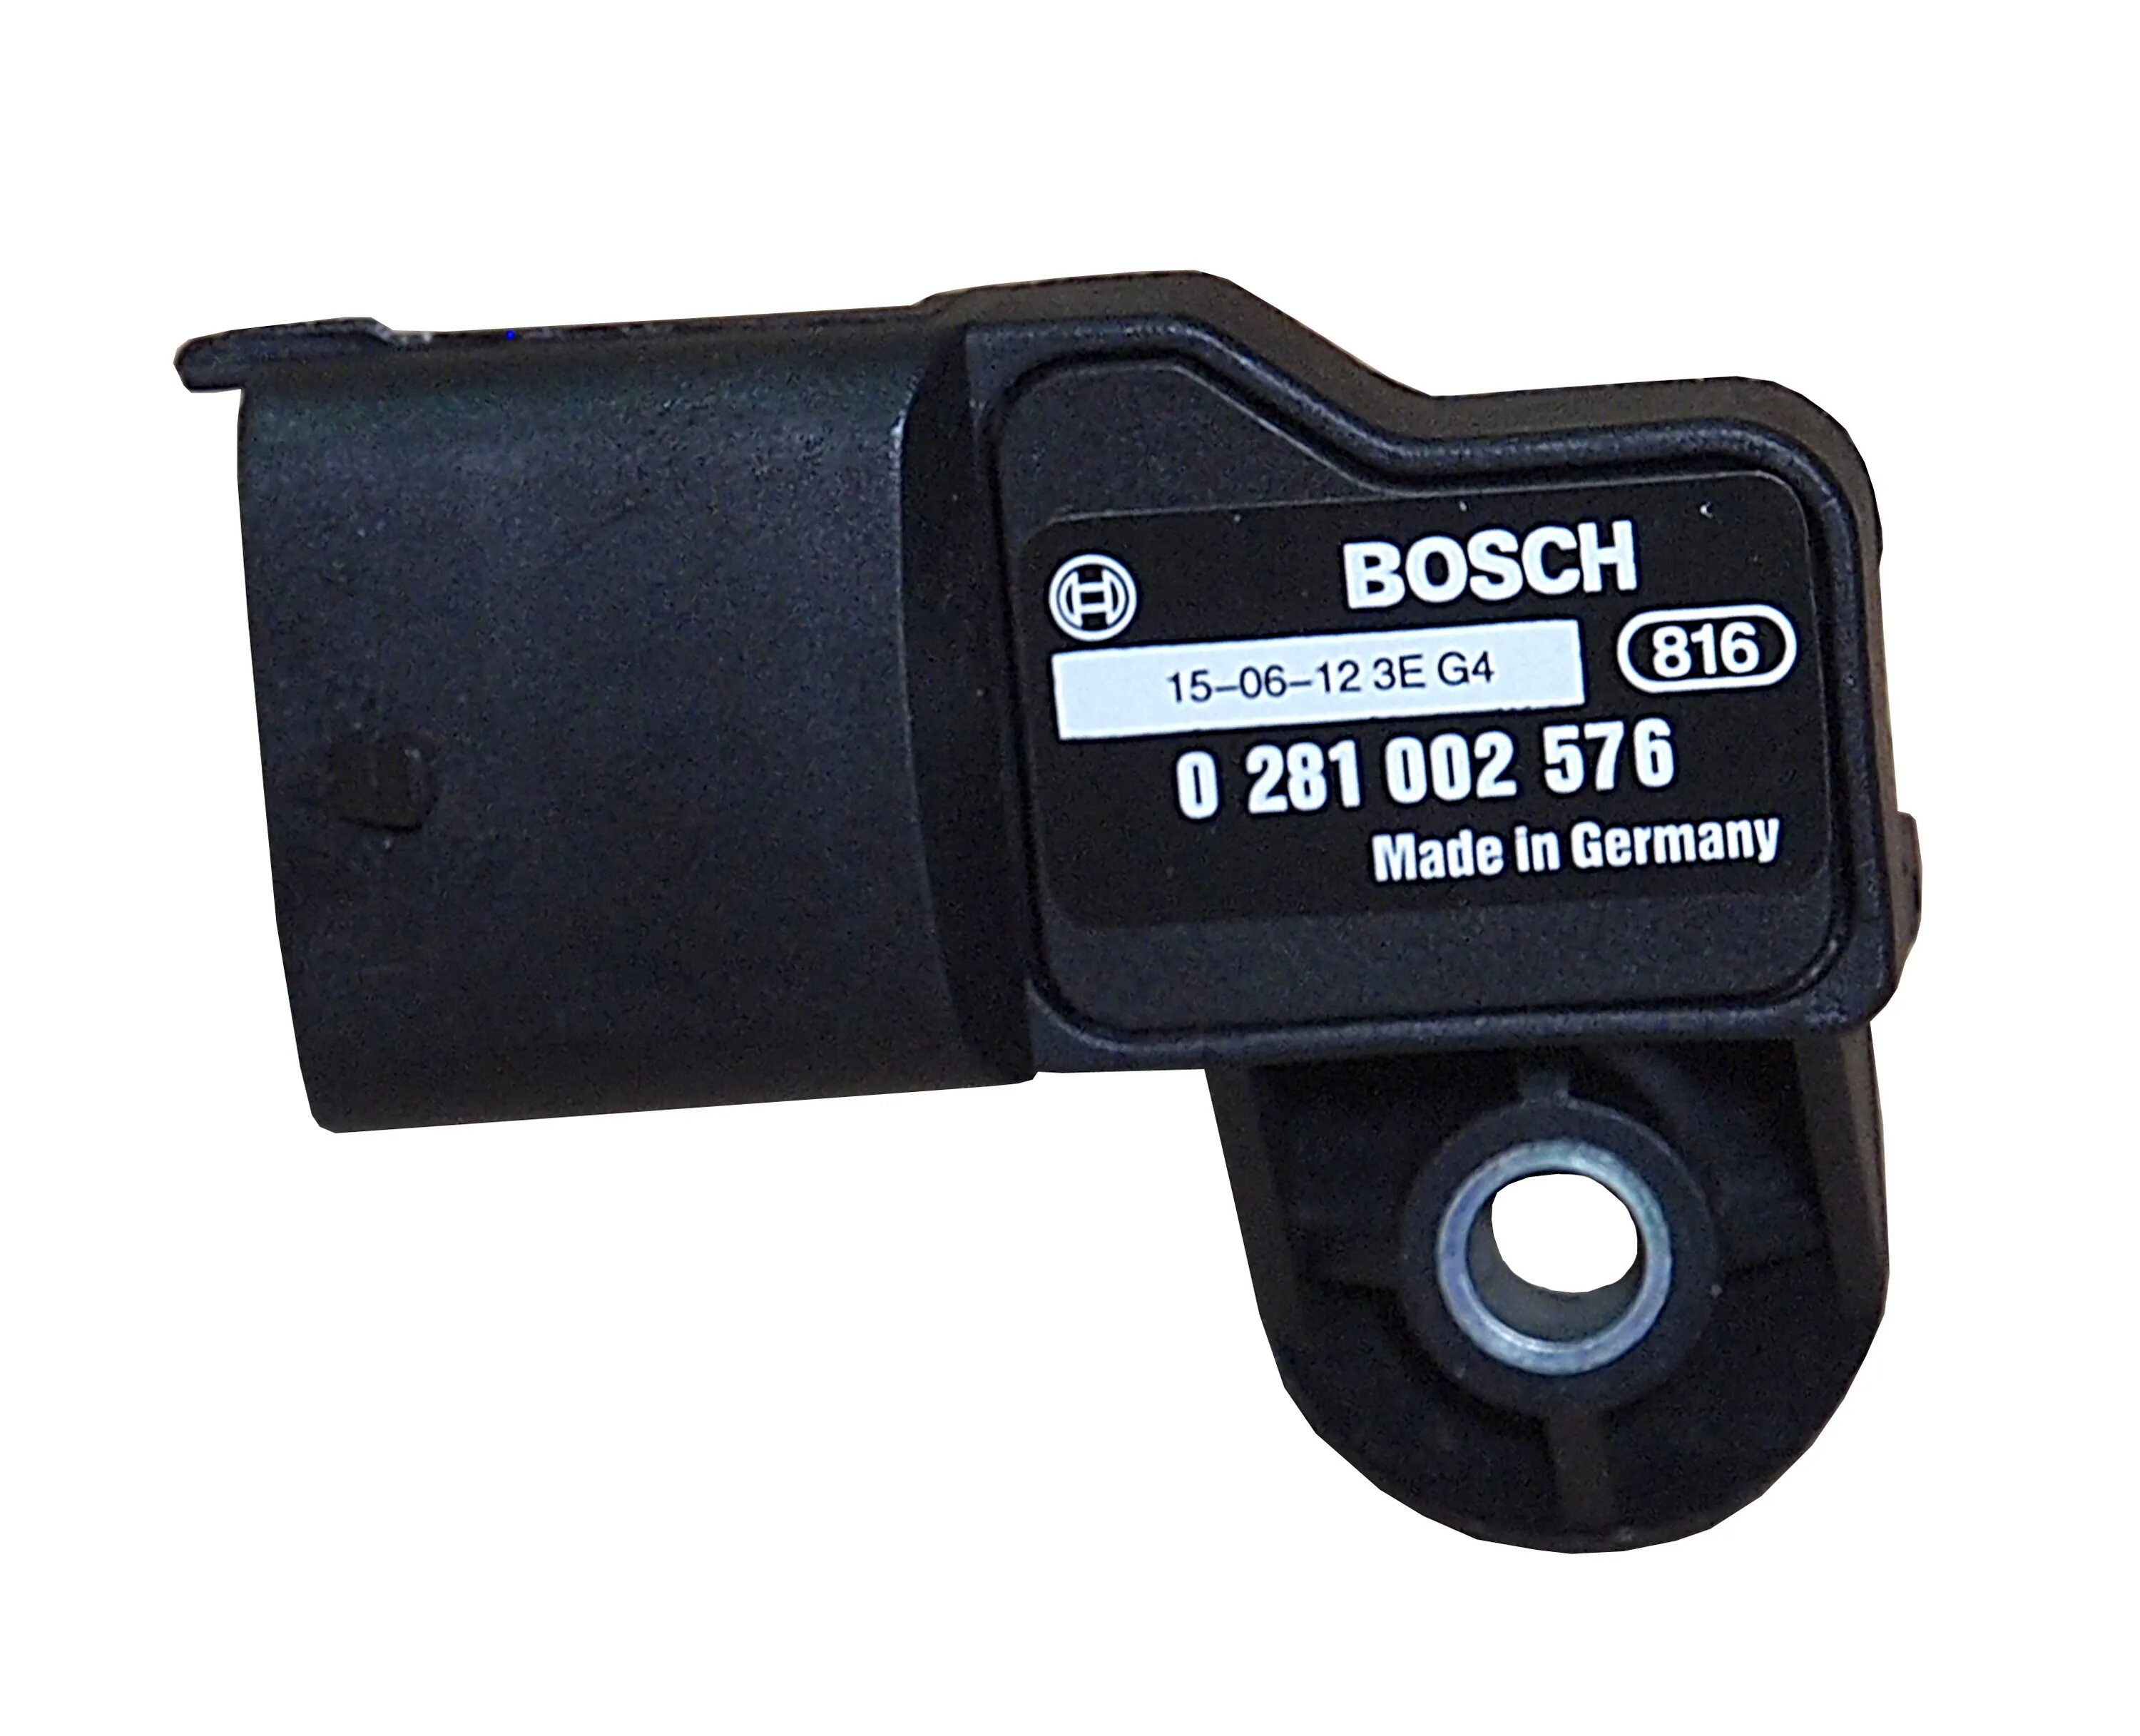 Датчик наддувочного воздуха. 0281002576 Bosch датчик давления наддува. Датчик давления наддува КАМАЗ евро 4. Датчик 650-1130548. Датчик наддува ЯМЗ 650.